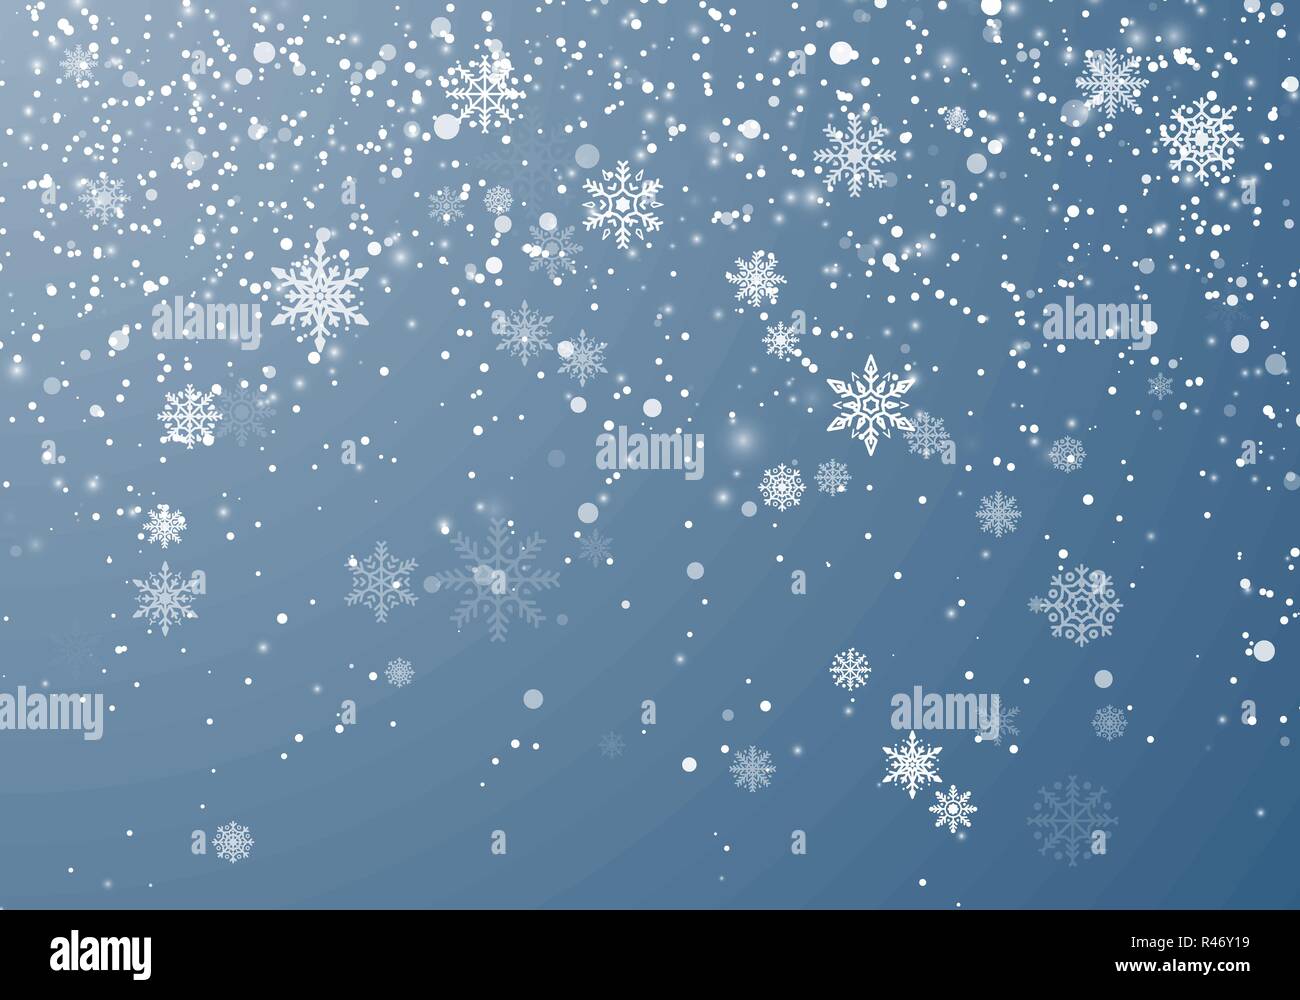 Schneefall Weihnachten Hintergrund. Flying Schneeflocken und die Sterne am Himmel Hintergrund. Winter wite Schneeflocke overlay Vorlage. Vector Illustration Stock Vektor